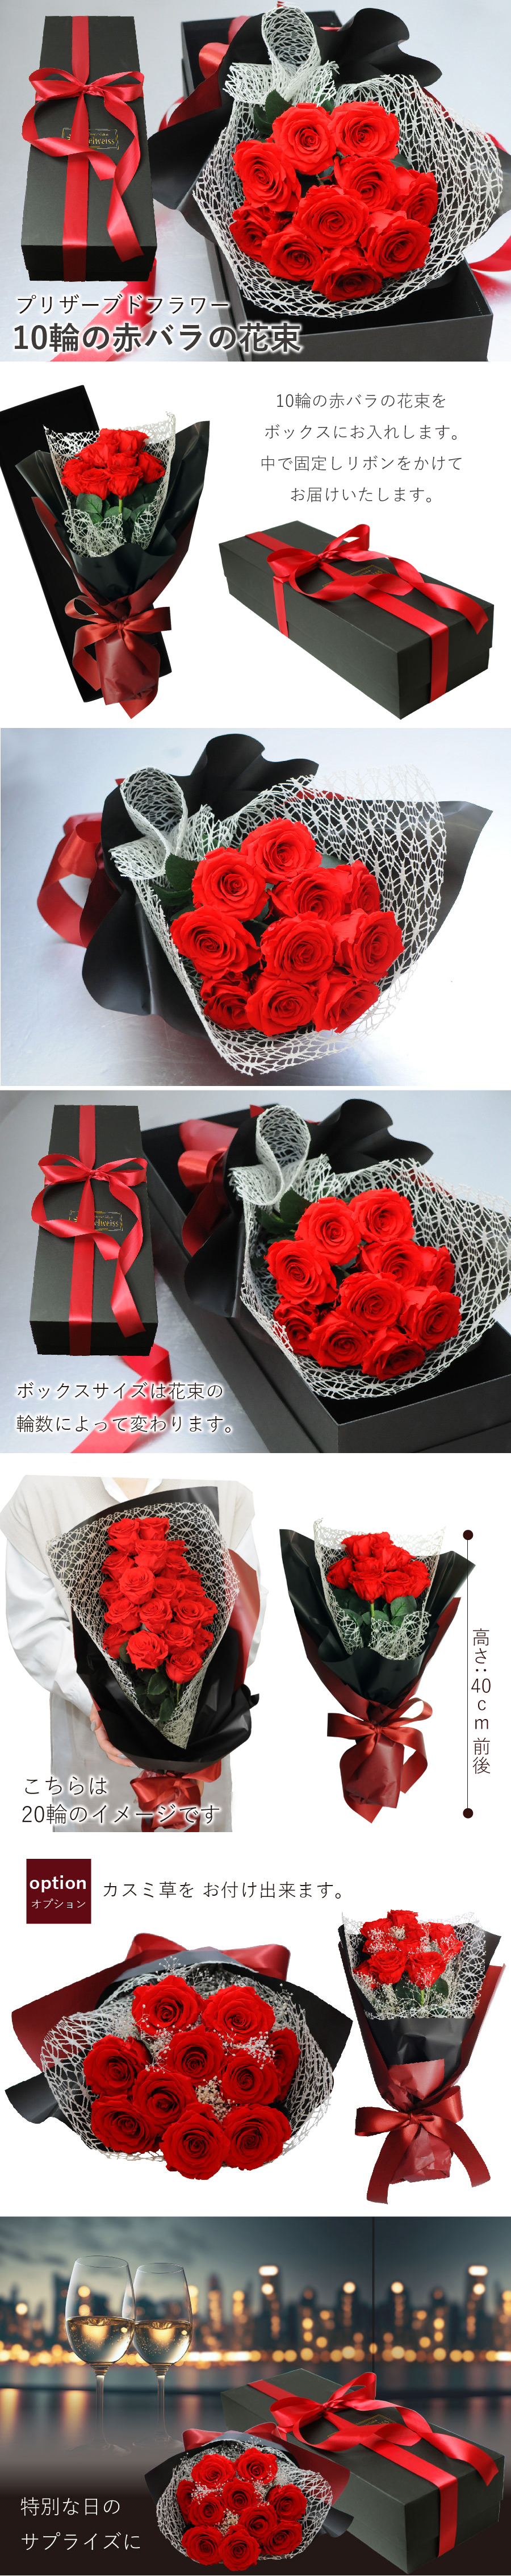 ブリザードフラワー 10輪の赤バラの花束 ボックス